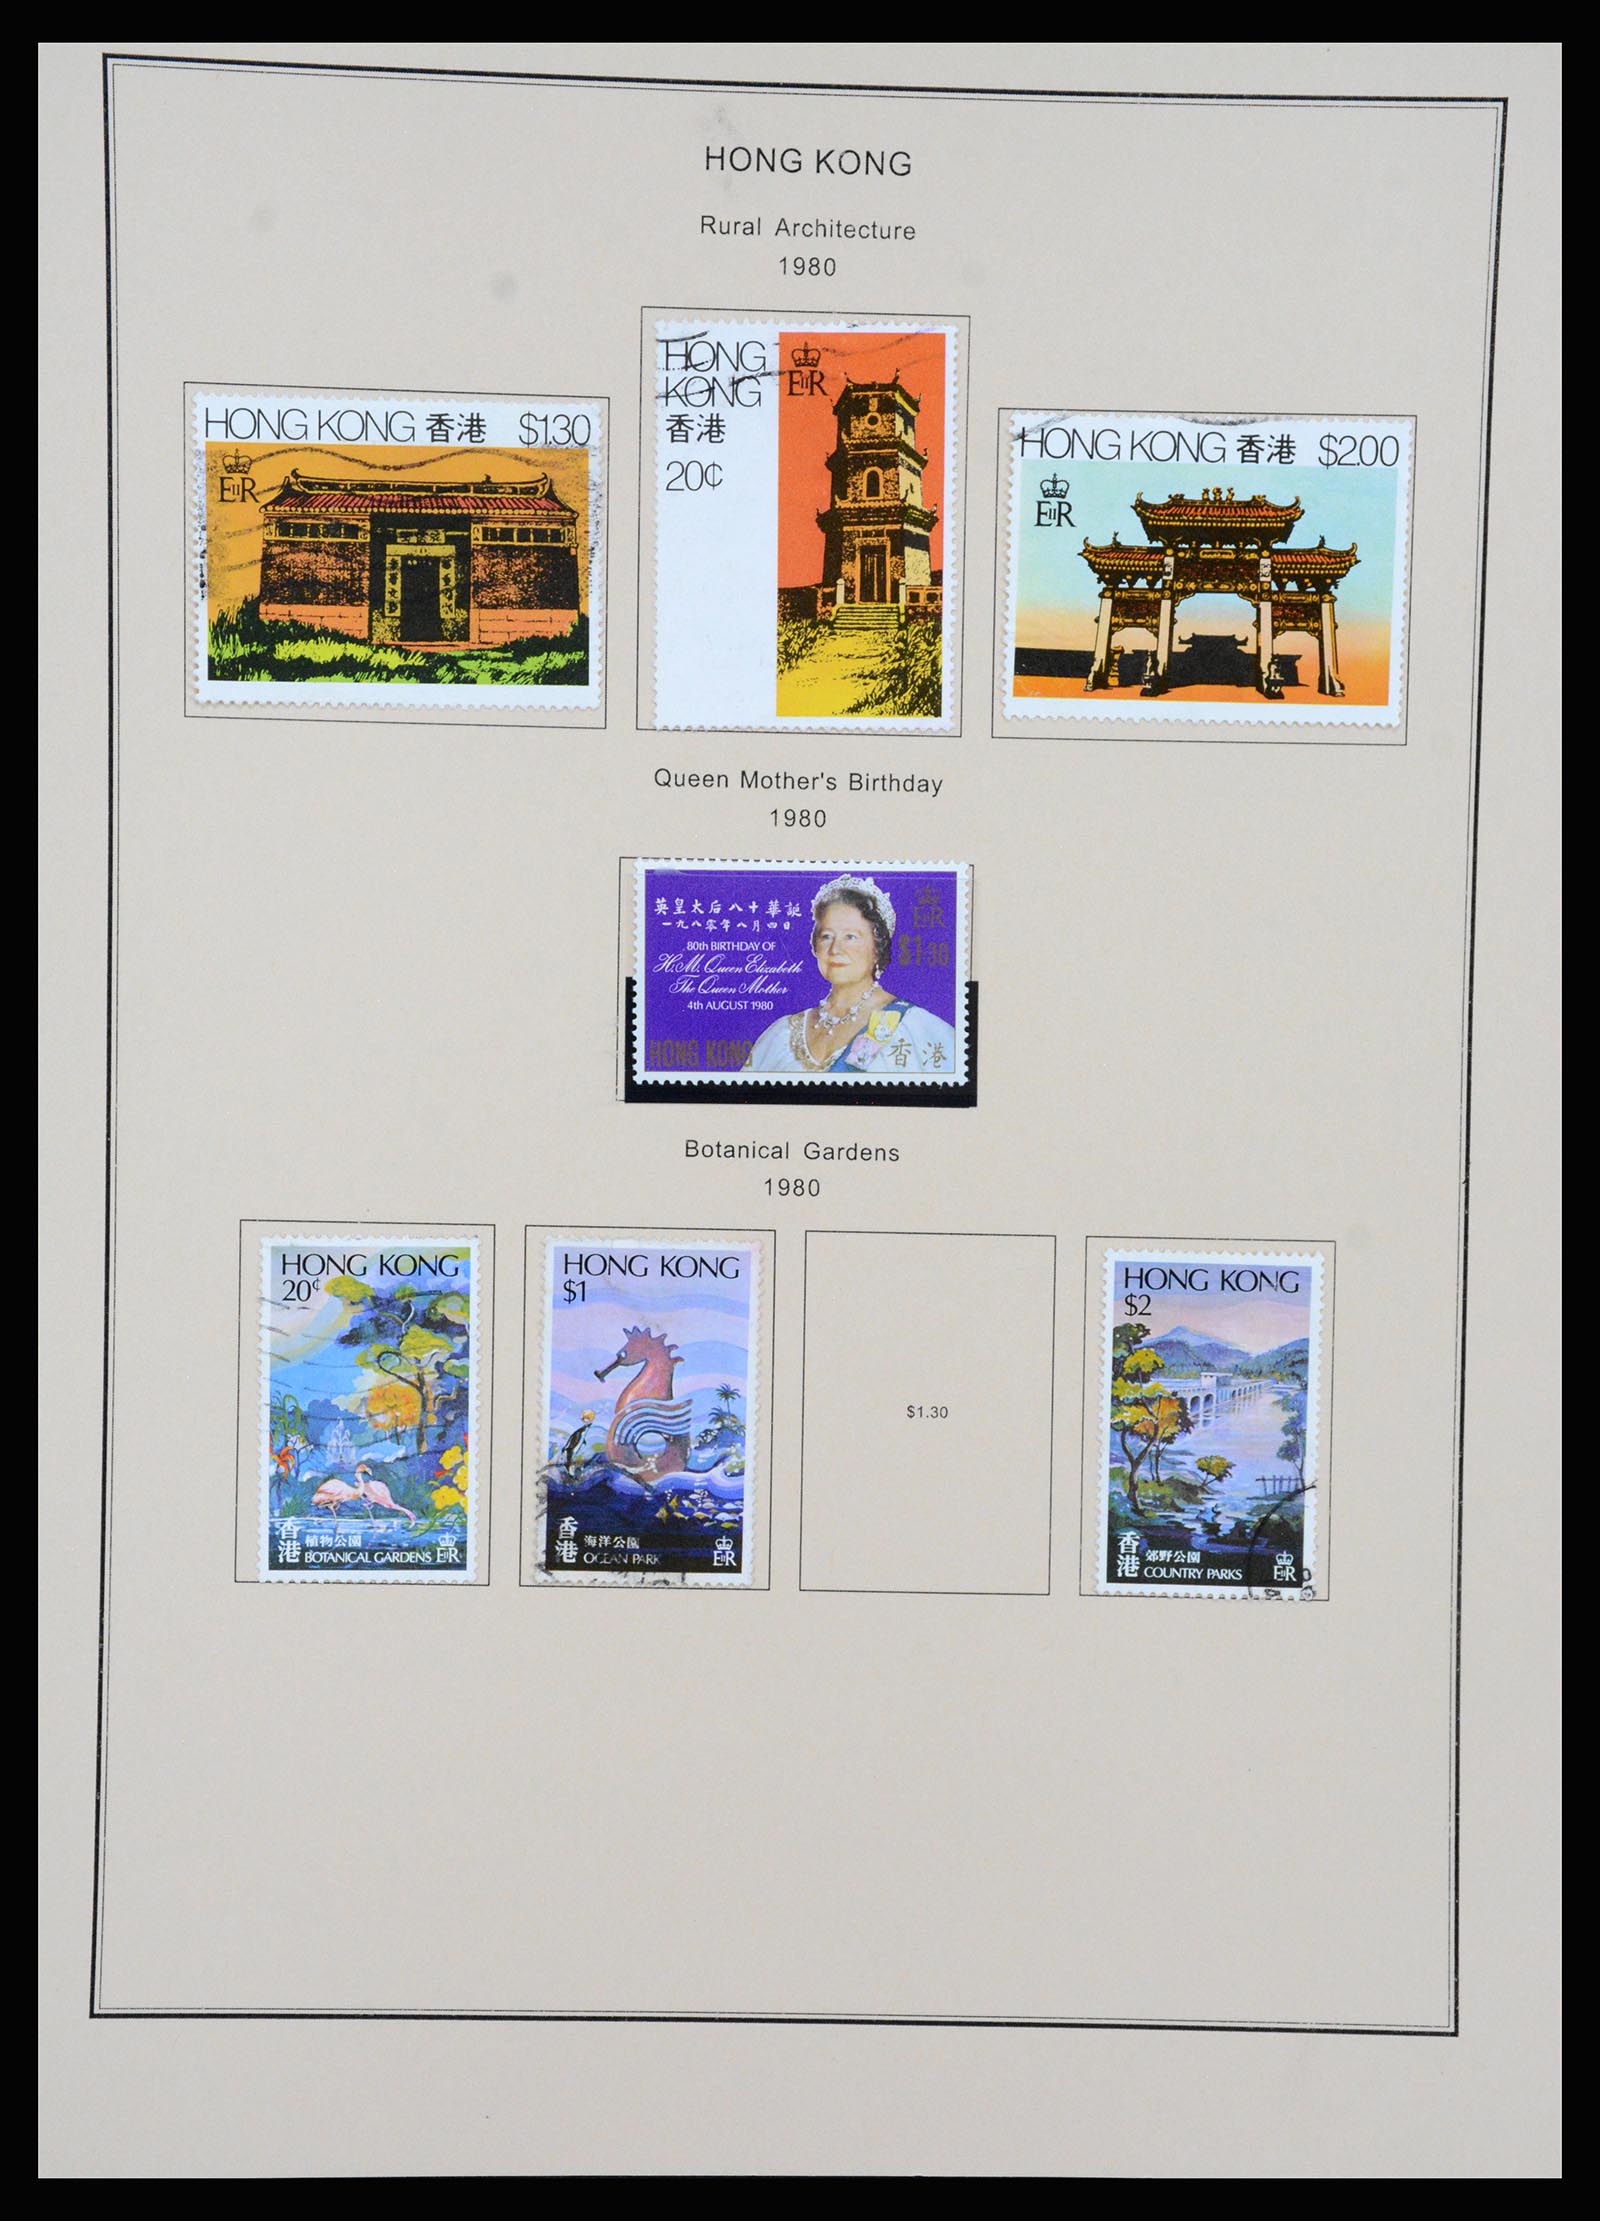 37210 038 - Stamp collection 37210 Hong Kong 1862-2000.